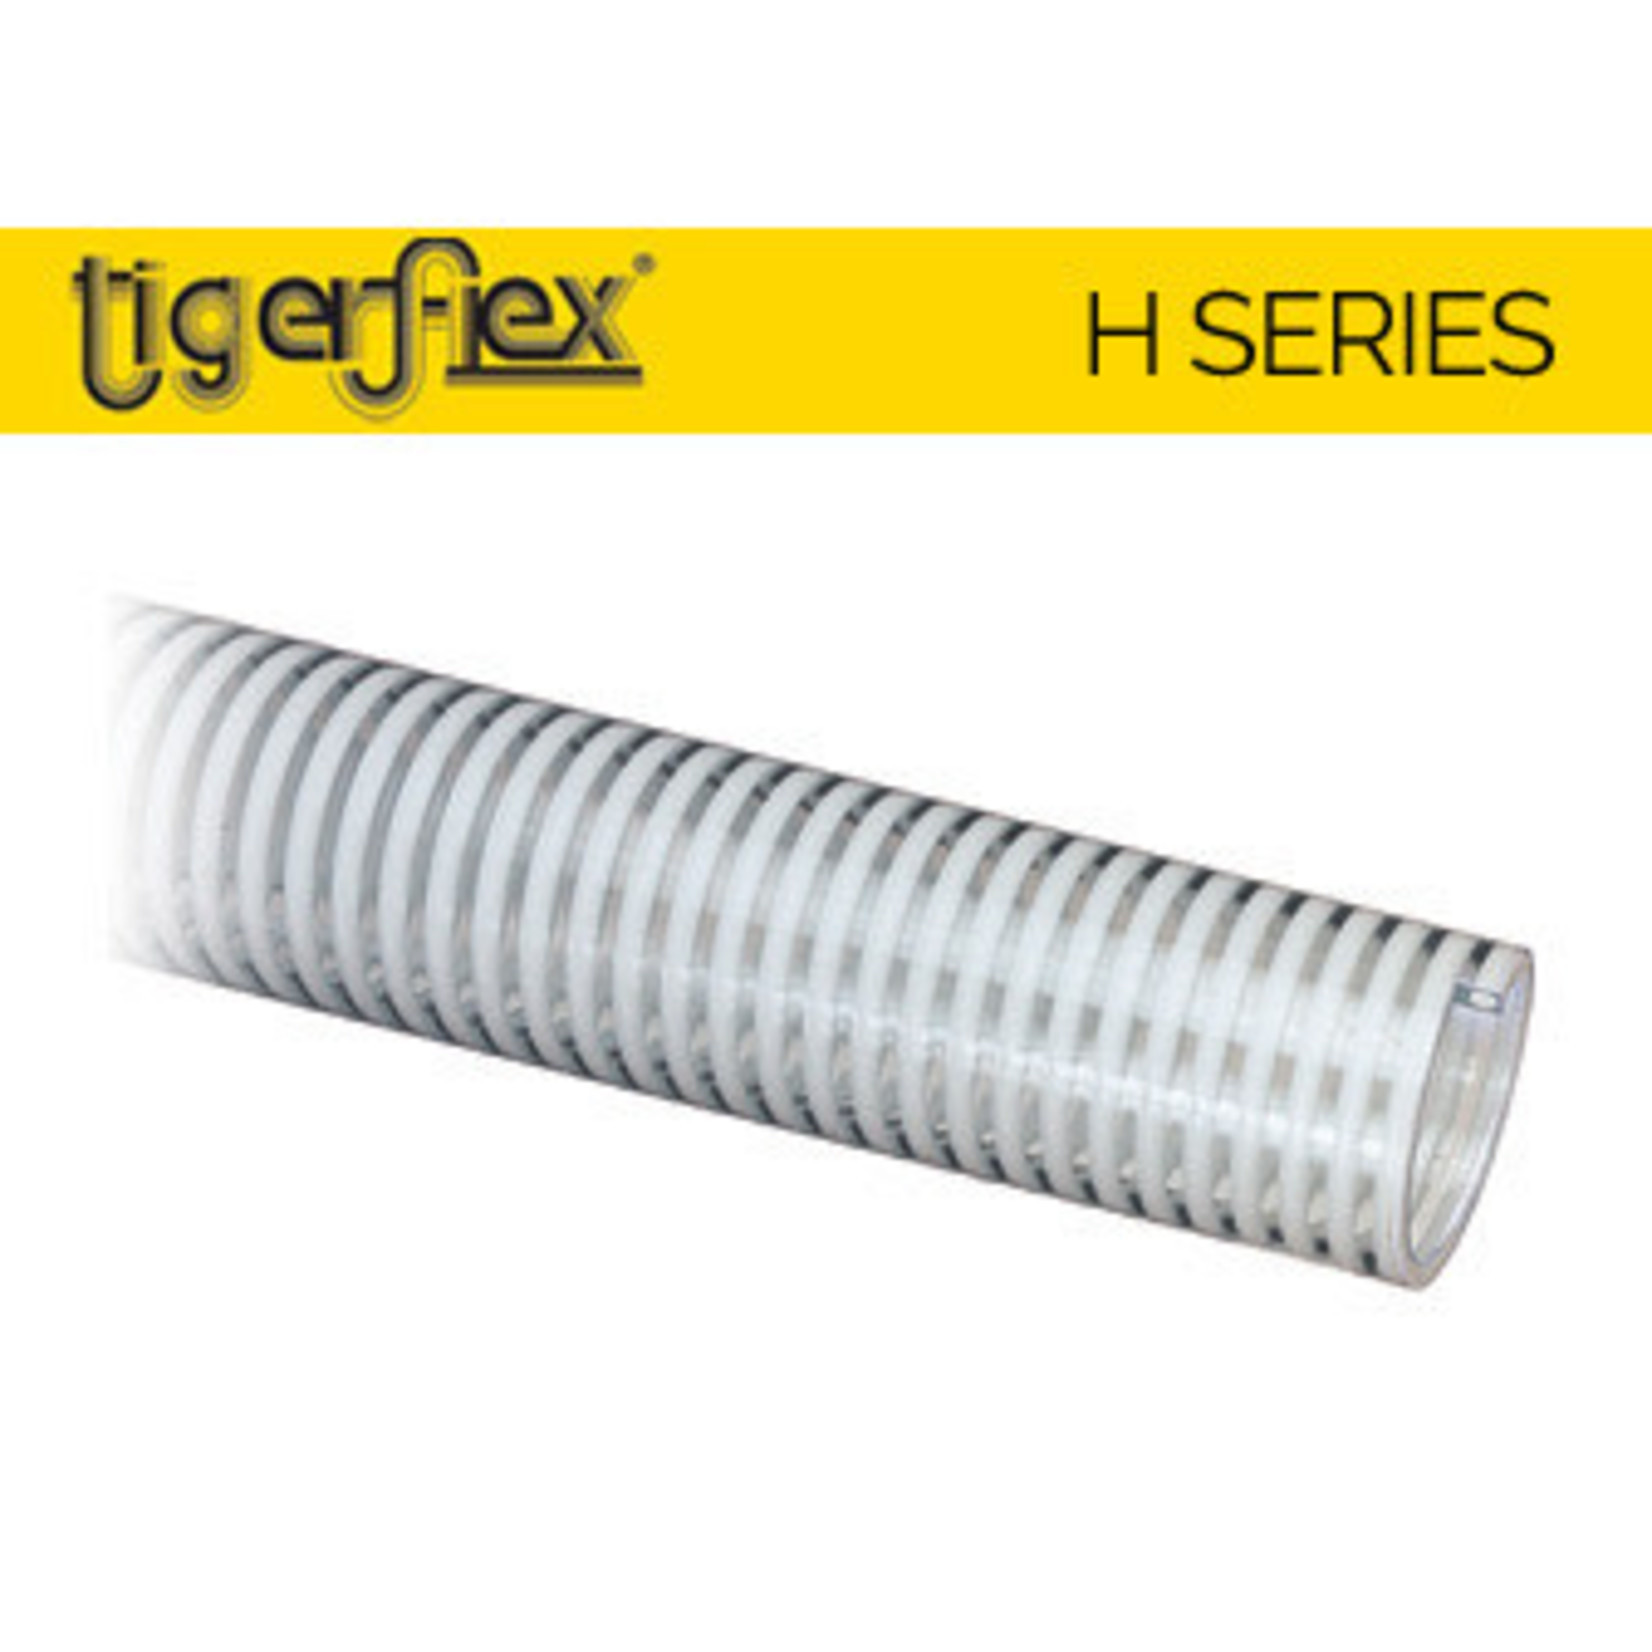 Suction Hose | 3/4" - Tiger Flex